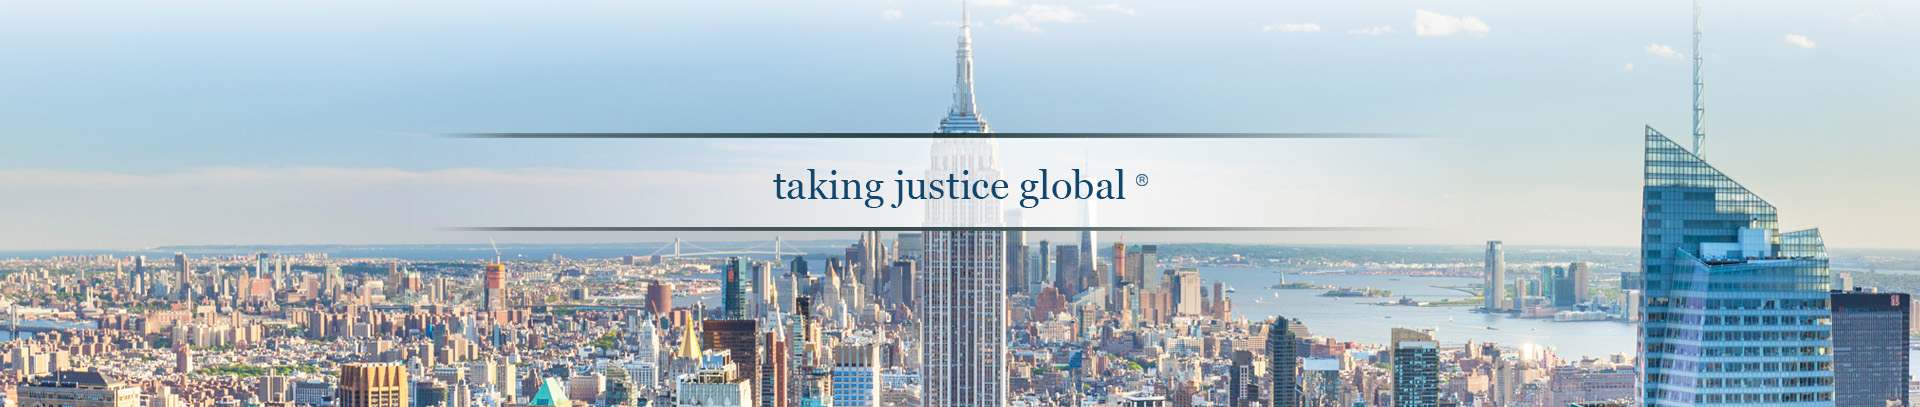 Taking Justice Global - Osen LLC